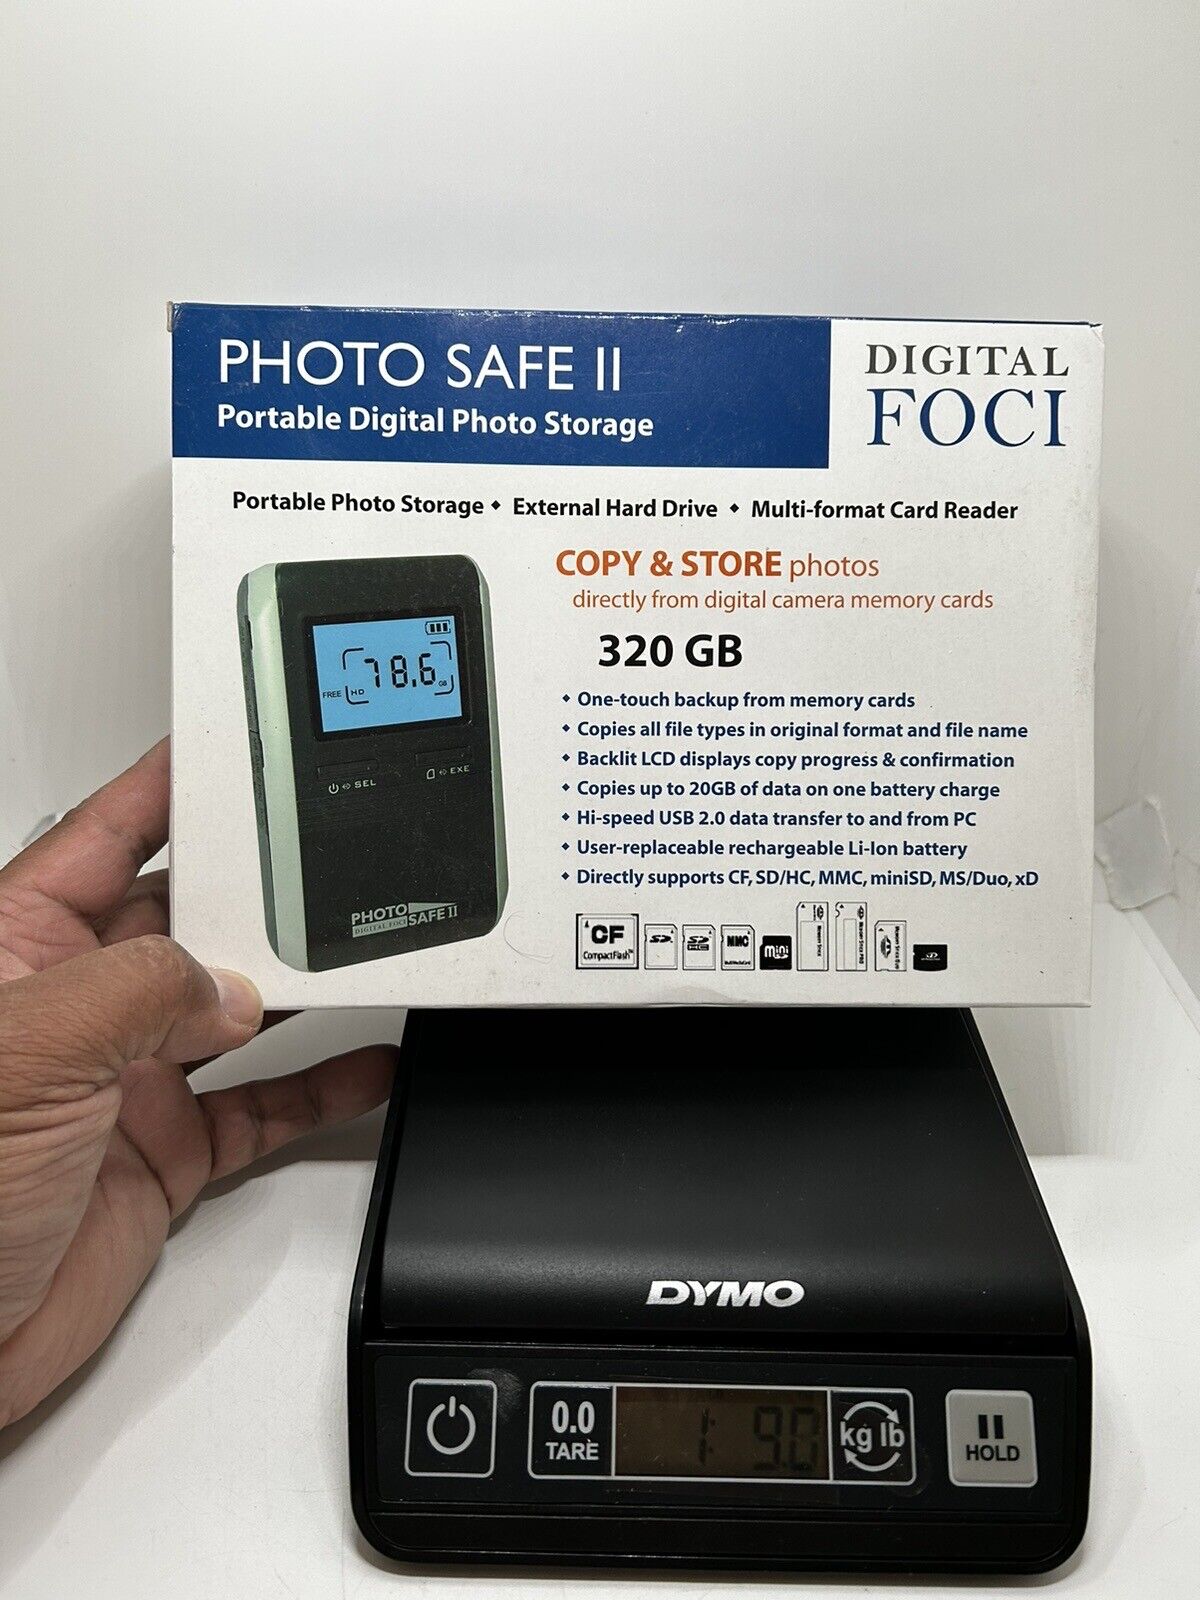 Digital Foci 320 GB External Hard Drive - USB 2.0 - SATA - 5400